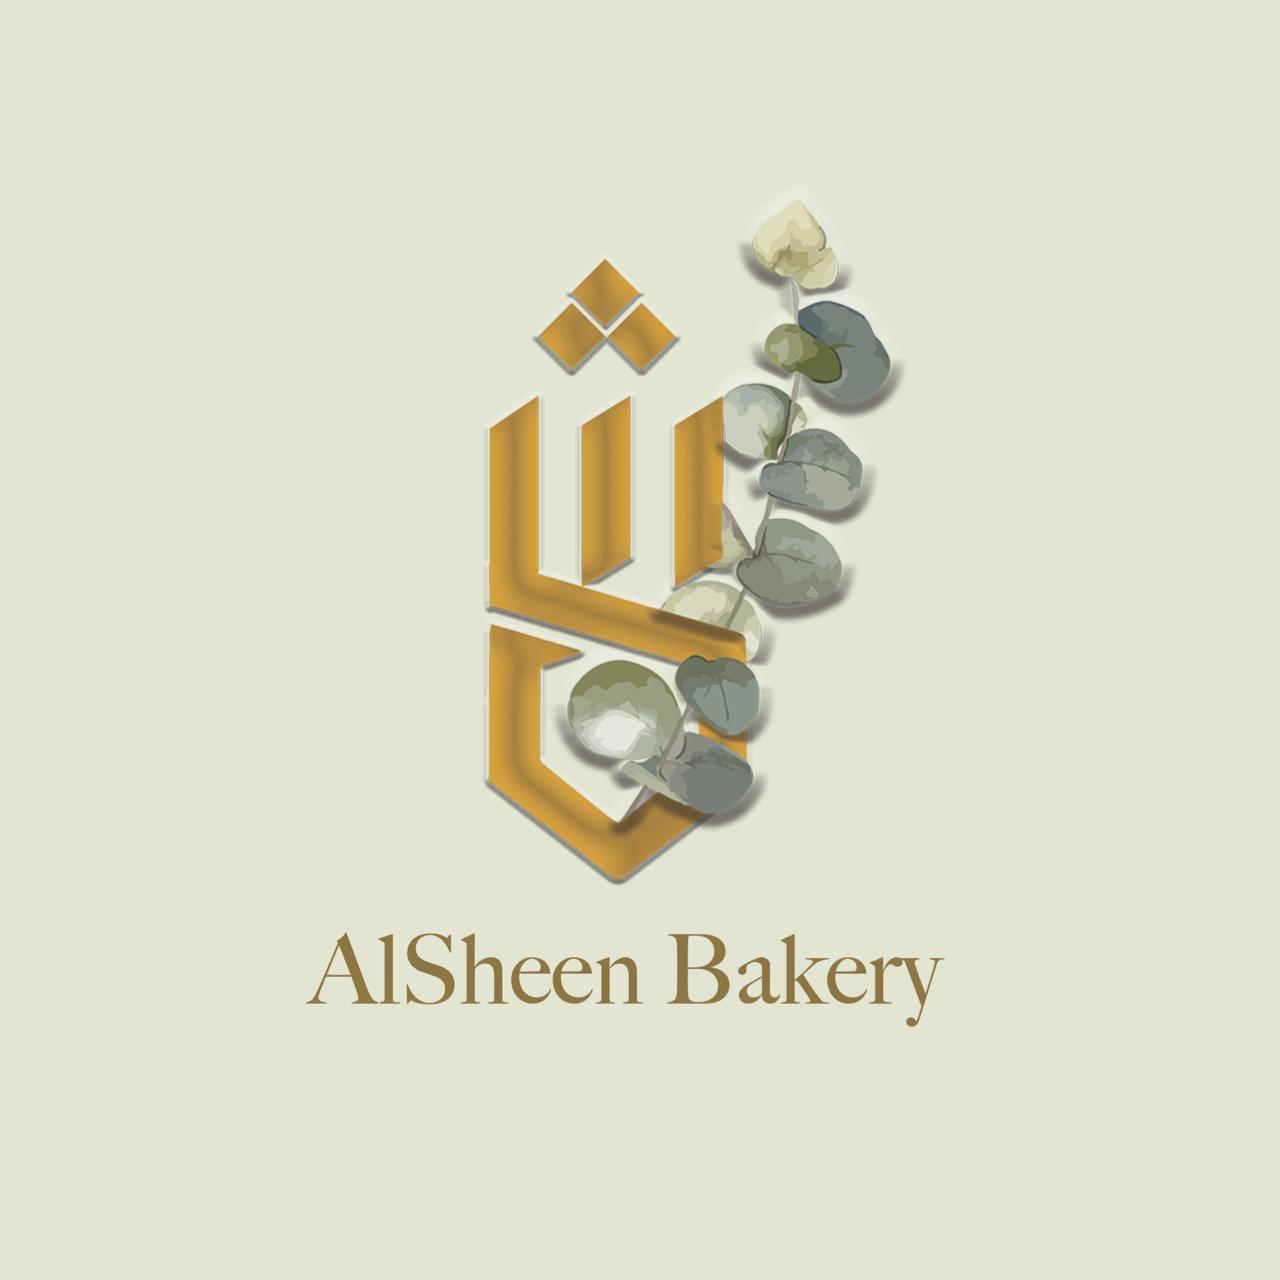 Al Sheen Bakery